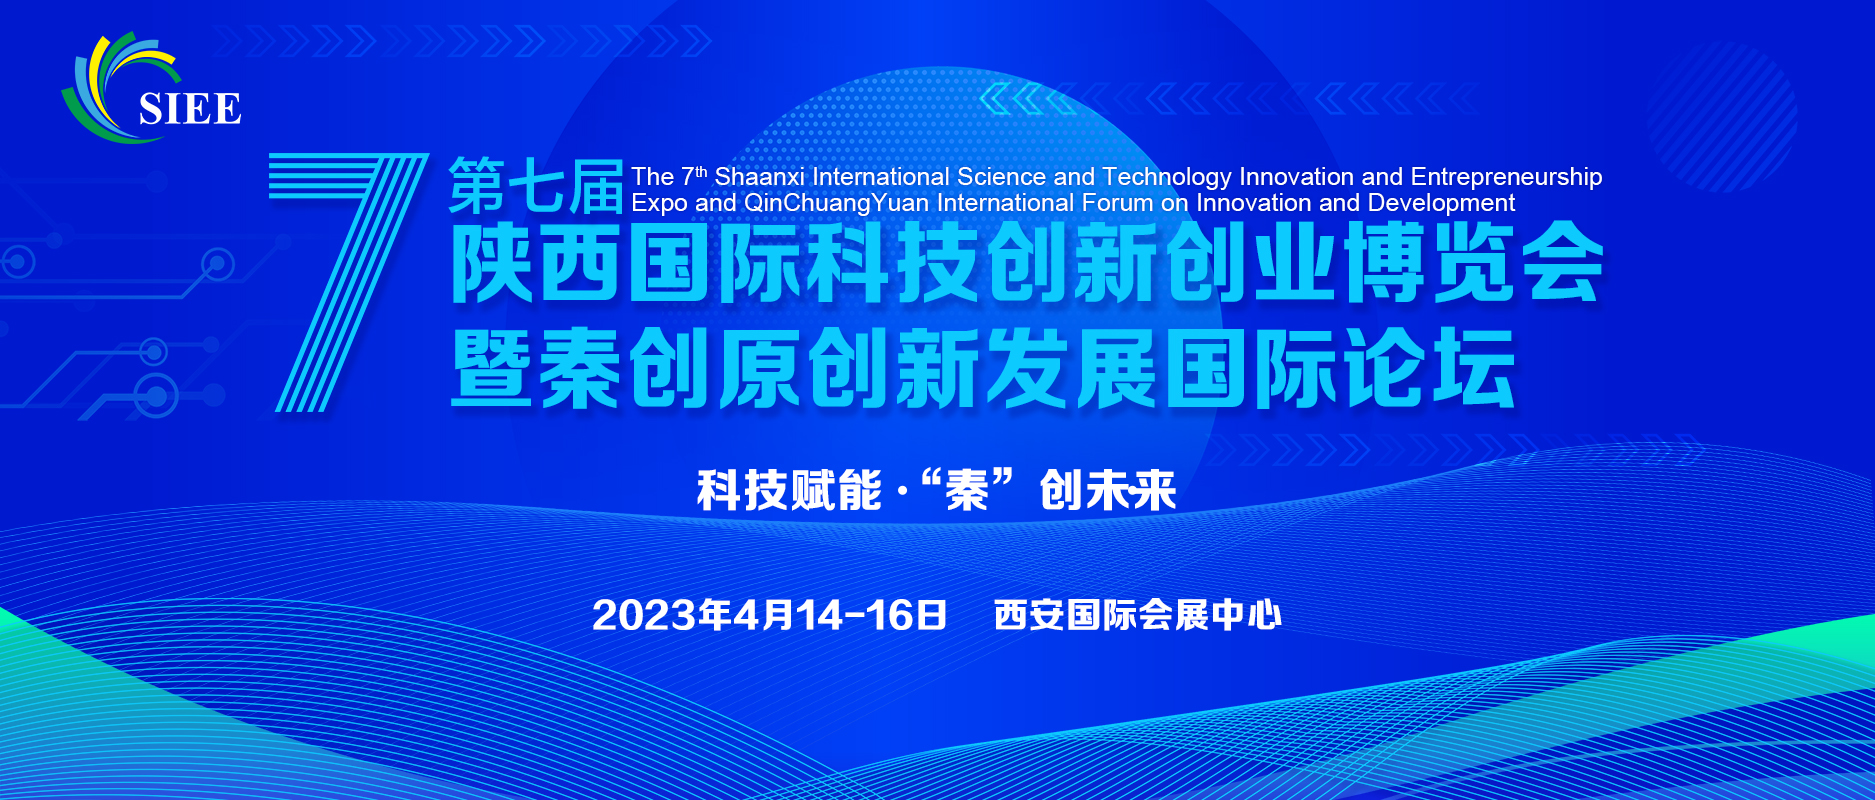 关于征集 第七届陕西国际科技创新创业博览会暨秦创原创新发展国际论坛搭建商的通知